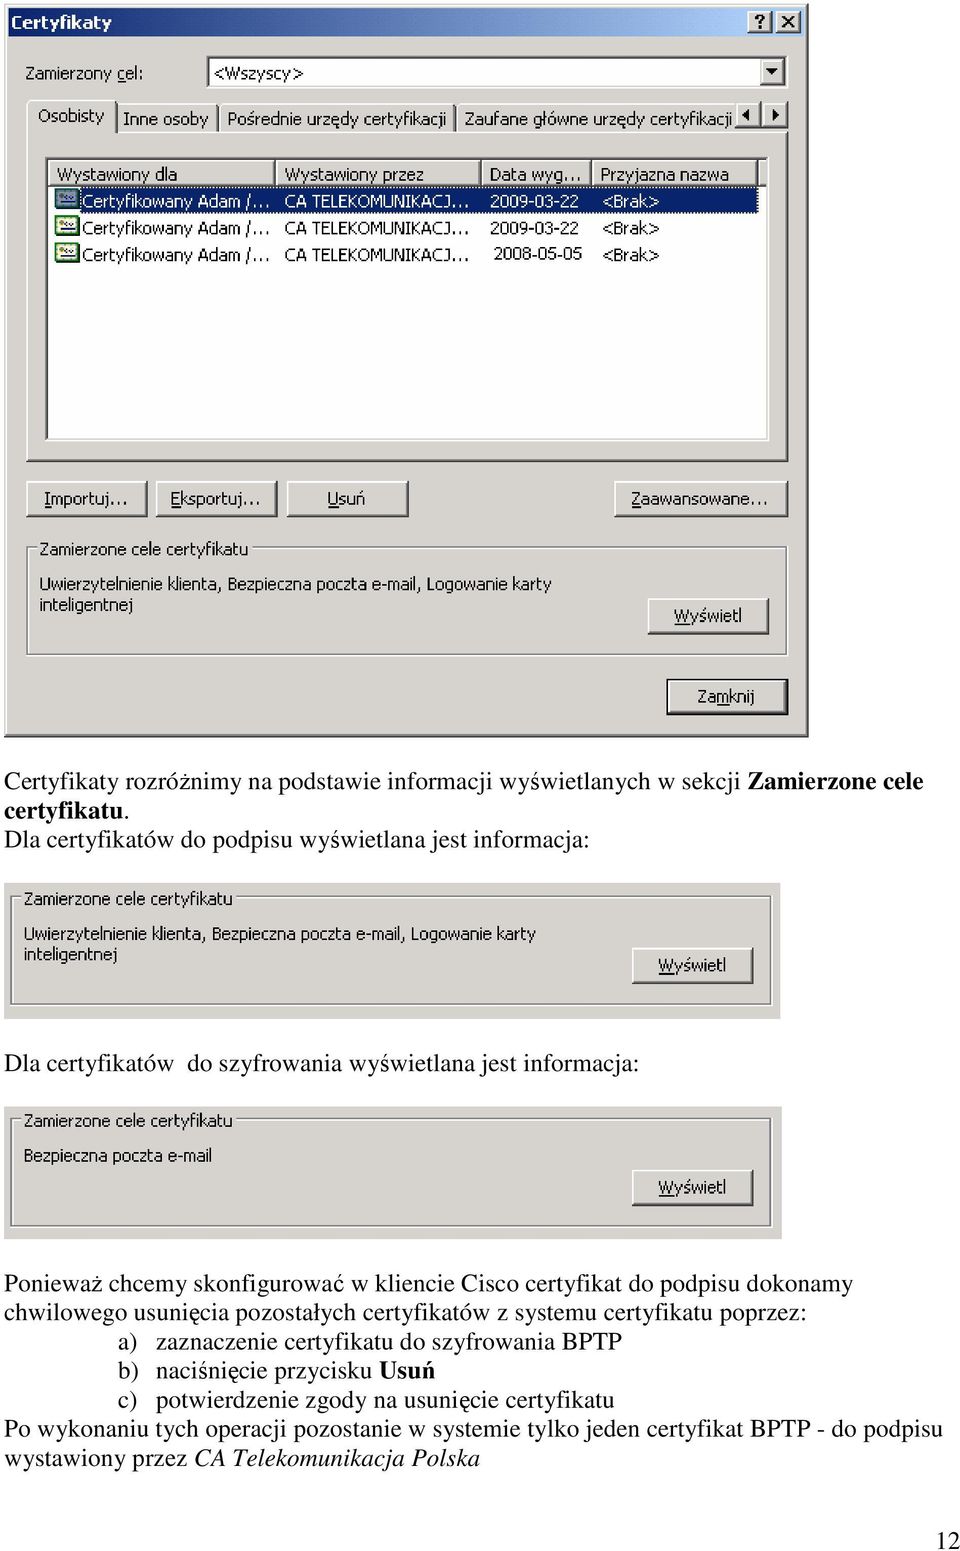 kliencie Cisco certyfikat do podpisu dokonamy chwilowego usunięcia pozostałych certyfikatów z systemu certyfikatu poprzez: a) zaznaczenie certyfikatu do